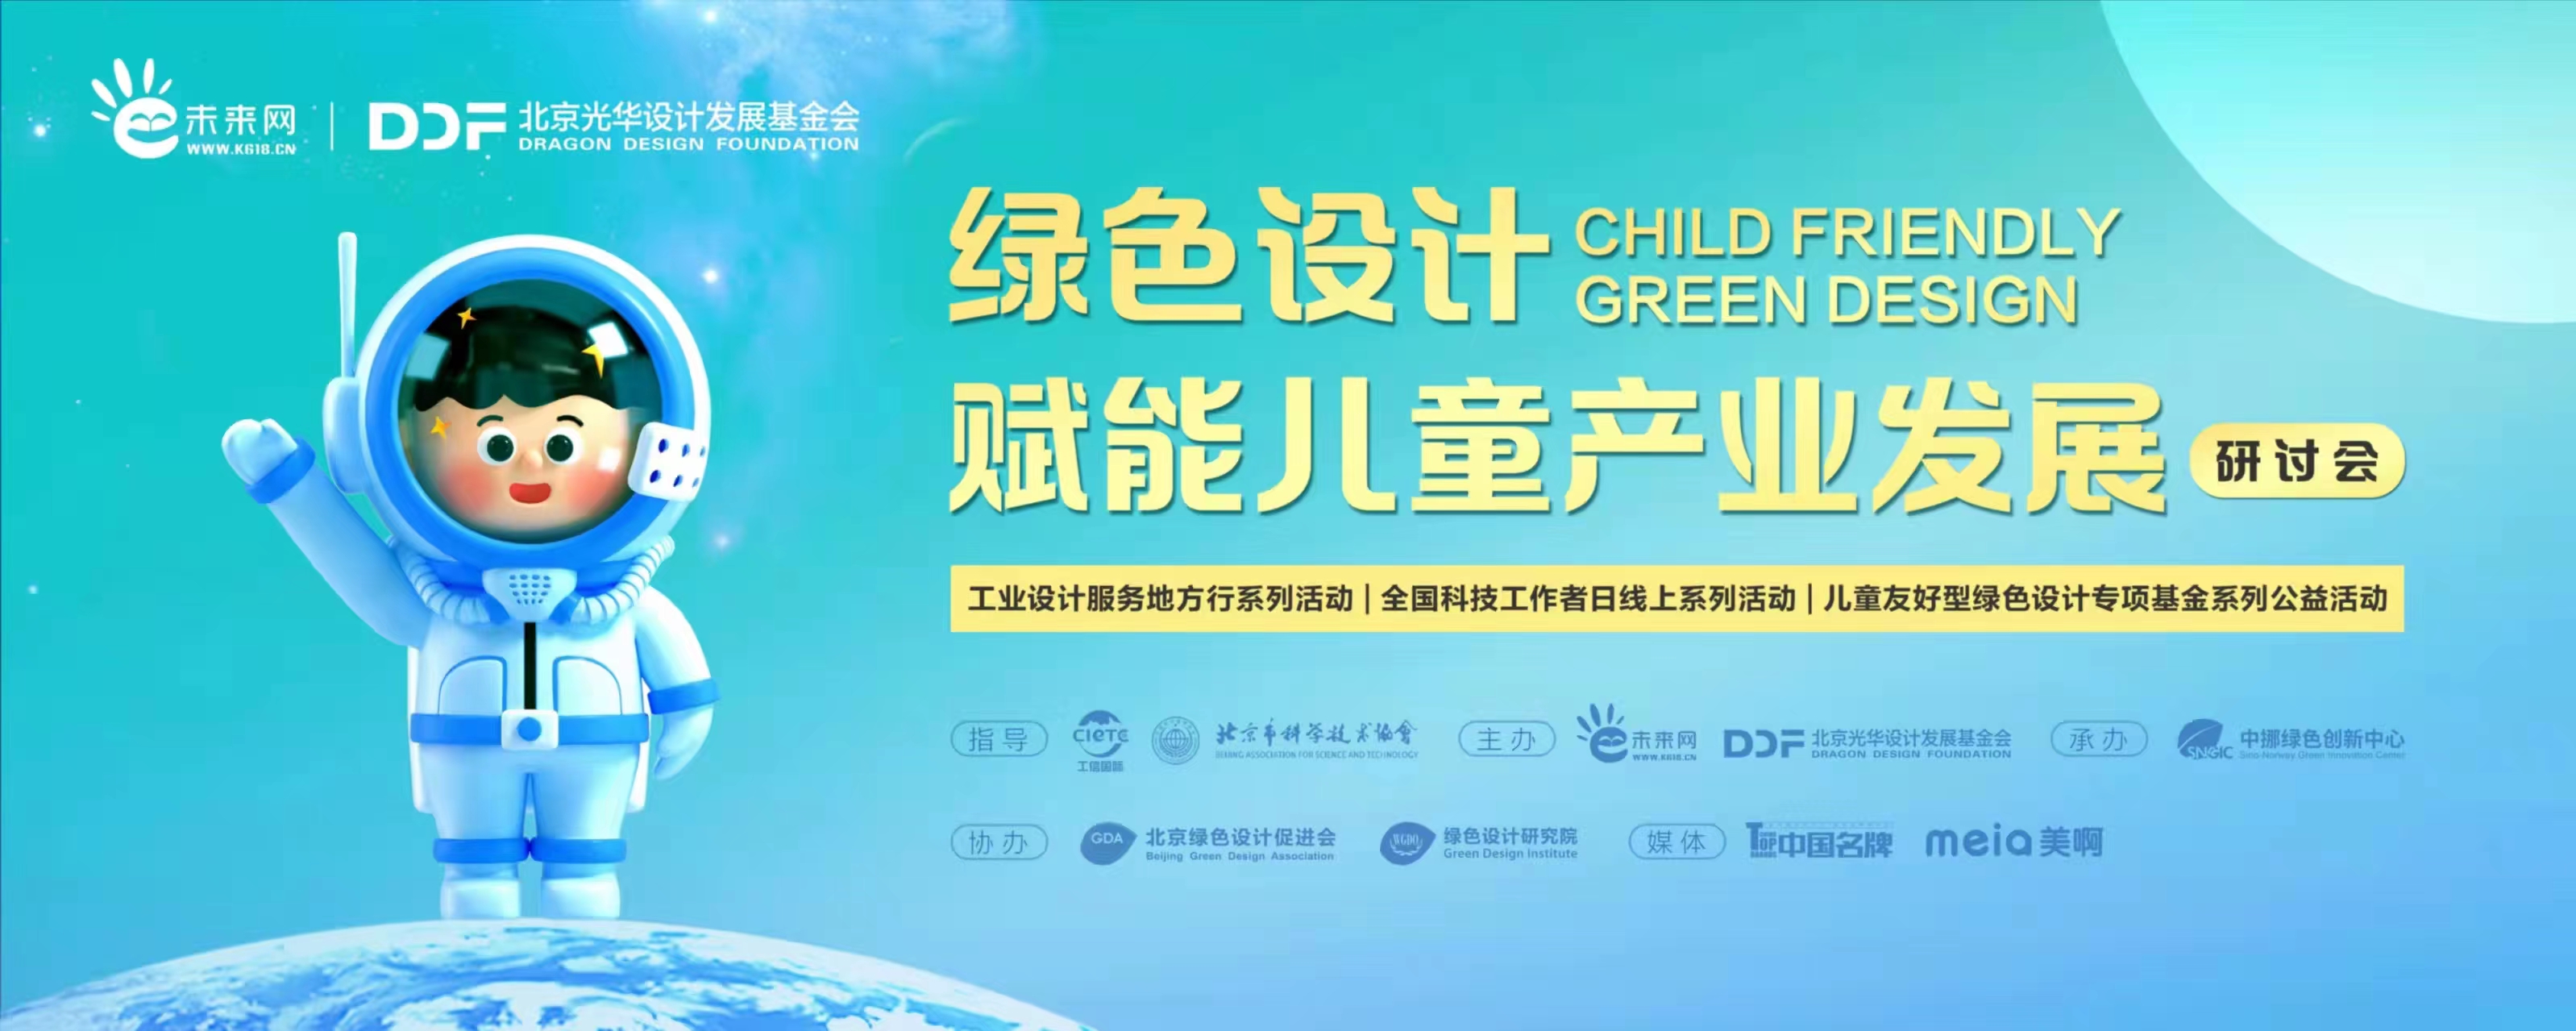 儿童友好型绿色设计专项基金公益活动“绿色设计赋能儿童产业发展研讨会”在京举办